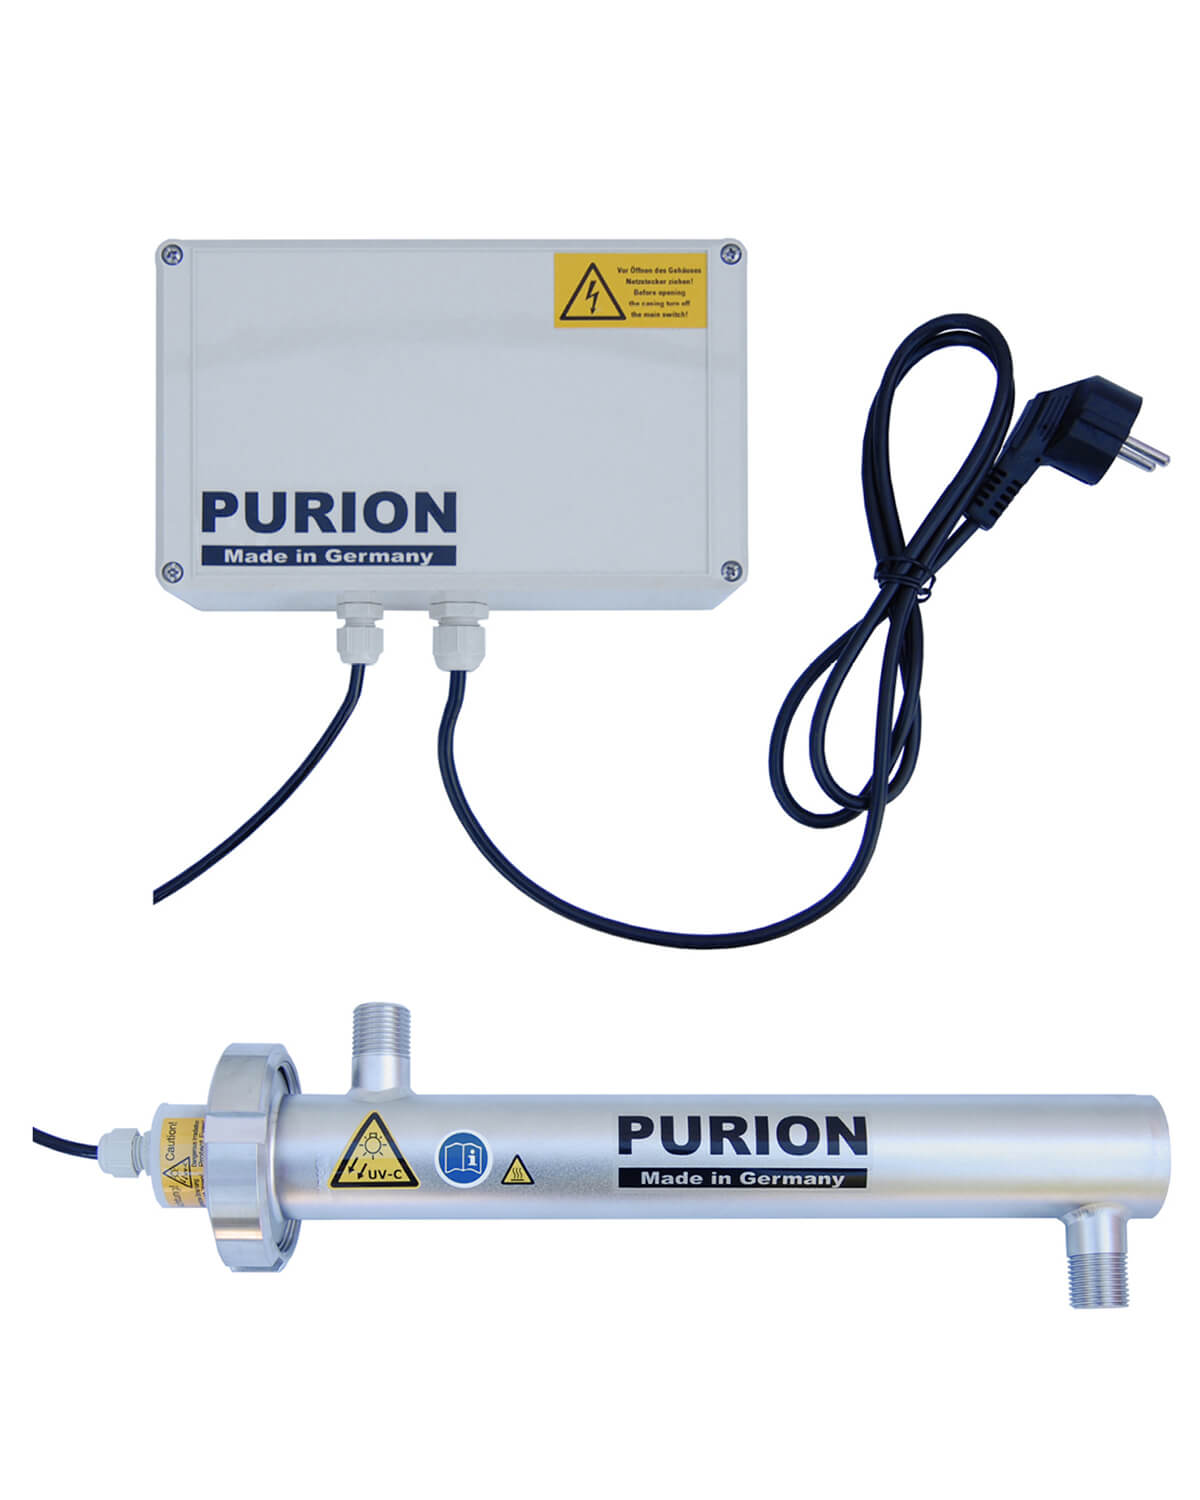 Die PURION 500 110 - 240 V AC Basic, hergestellt von der UV Concept GmbH, ist eine hocheffiziente Desinfektionsanlage zur Trinkwasseraufbereitung.